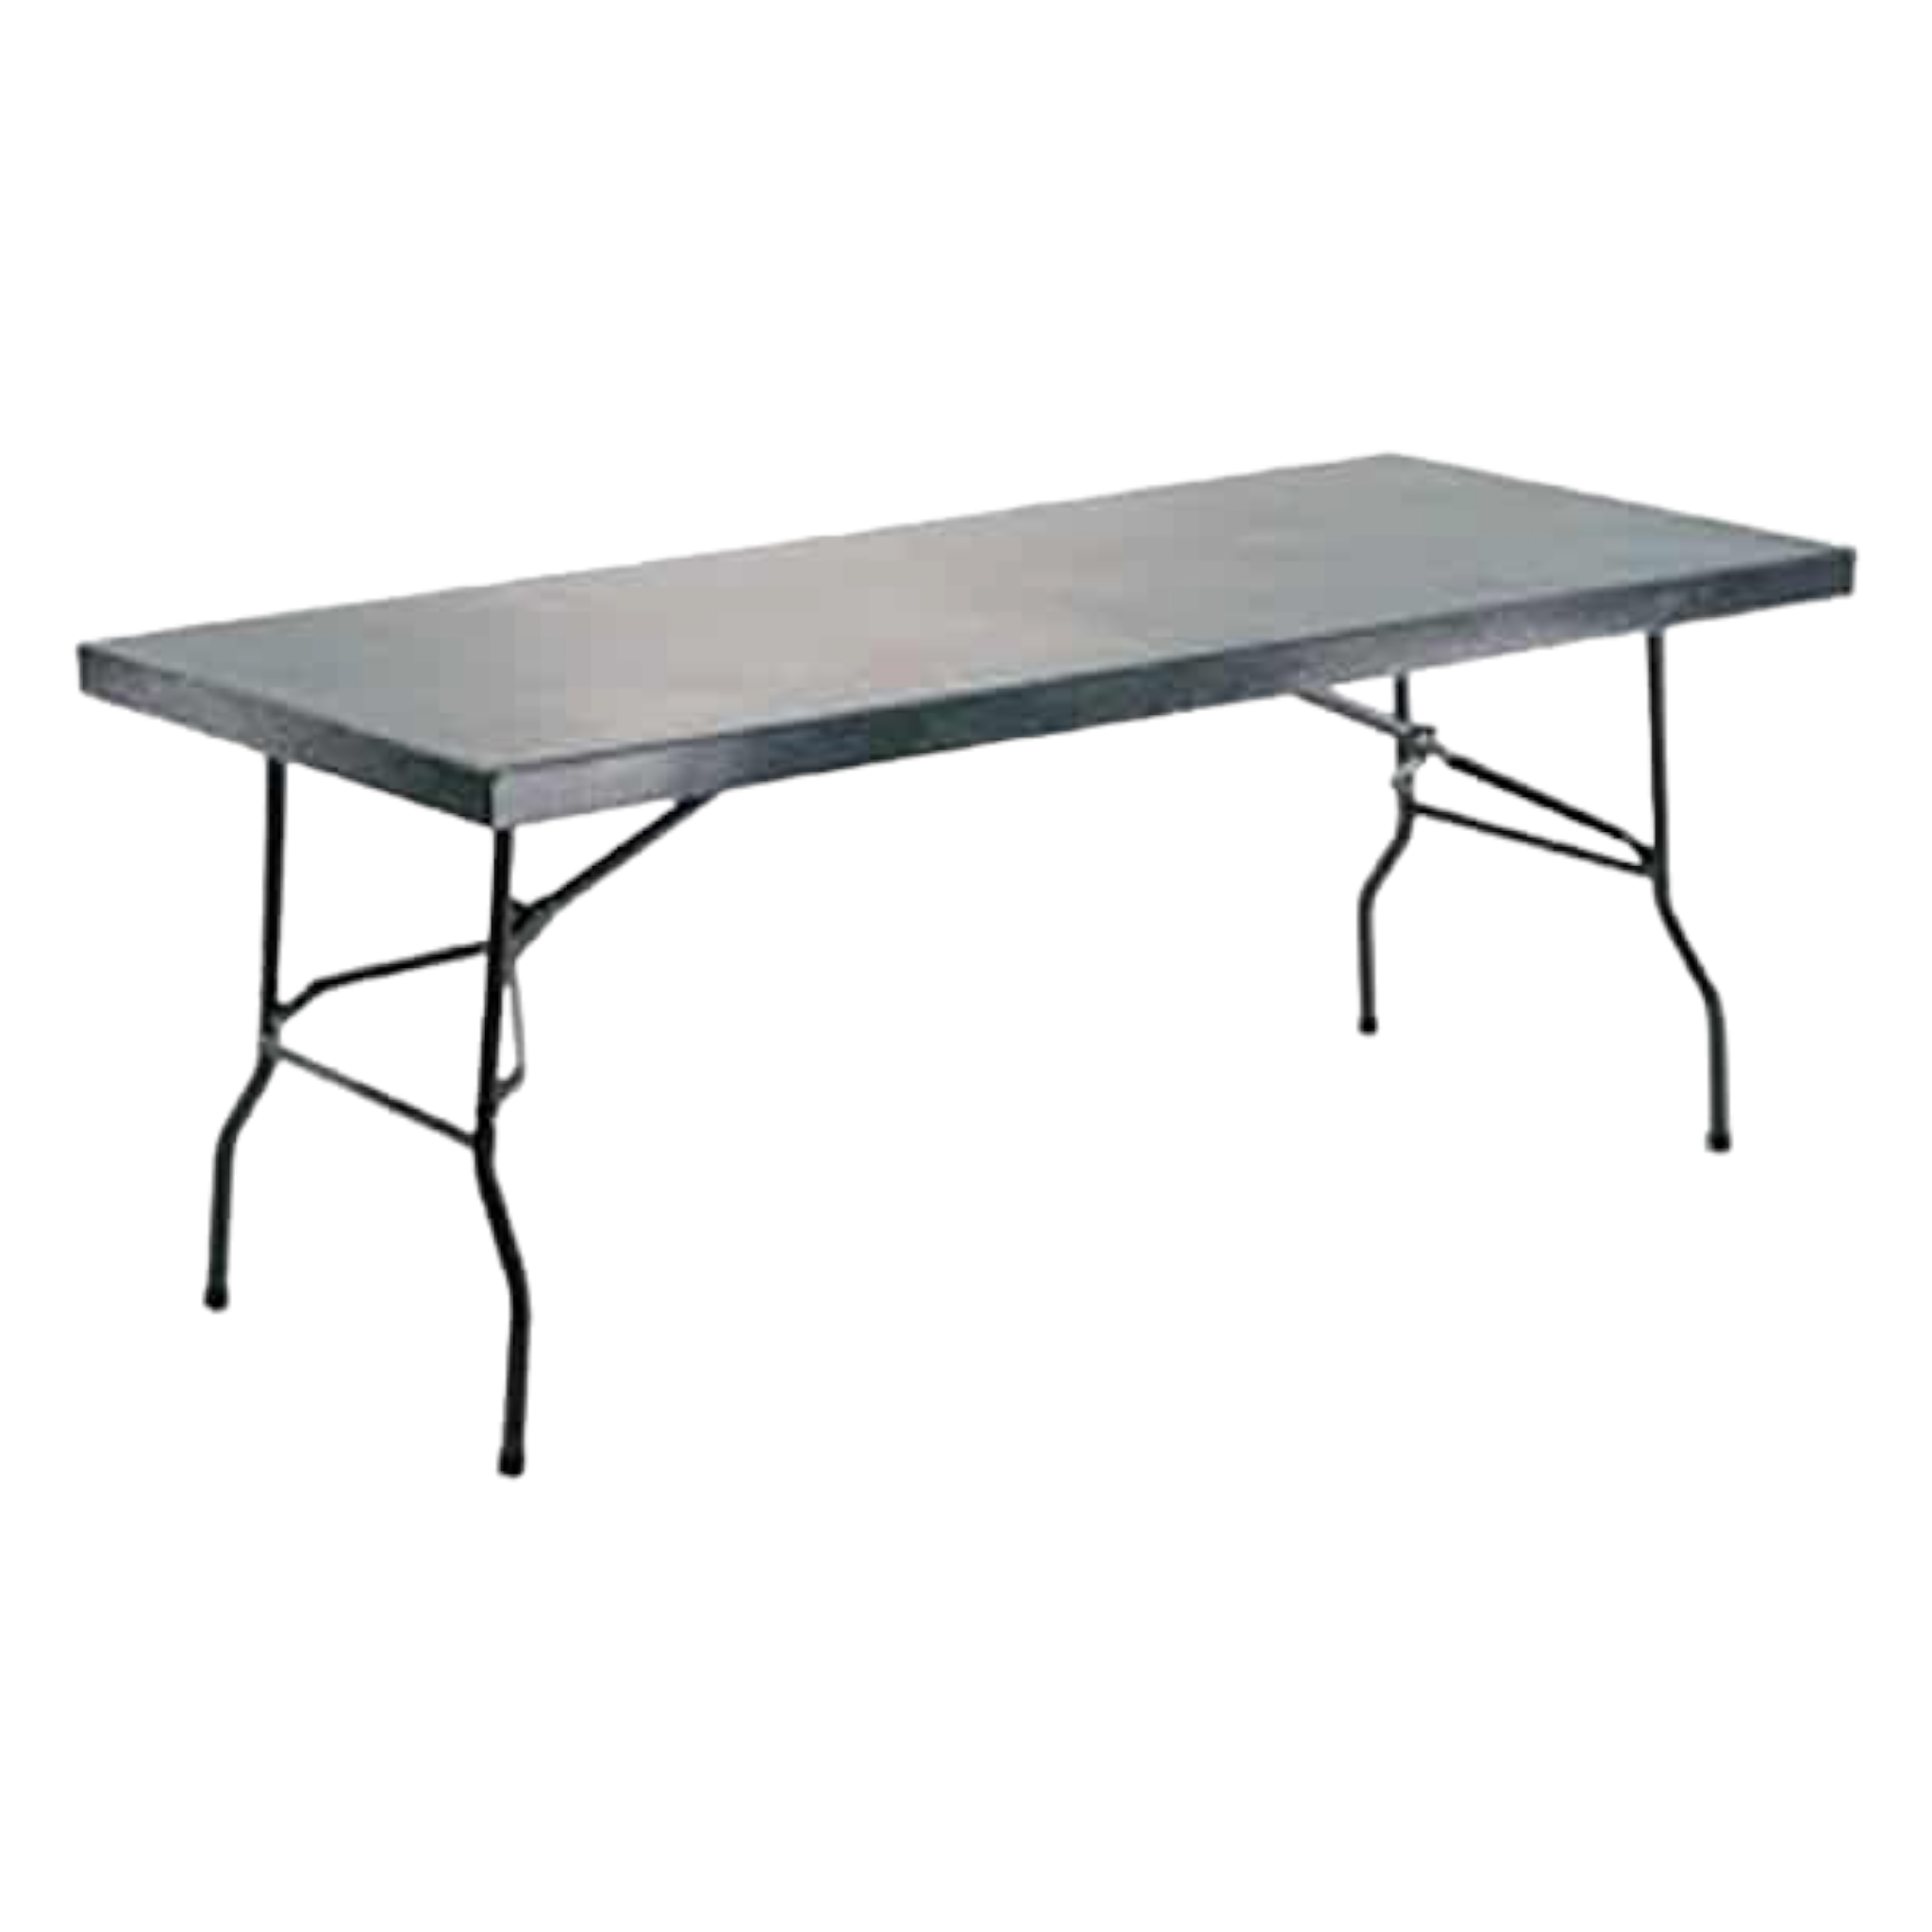 Steel Folding Table 1760mmx760mmx0.7mm Heavy Duty